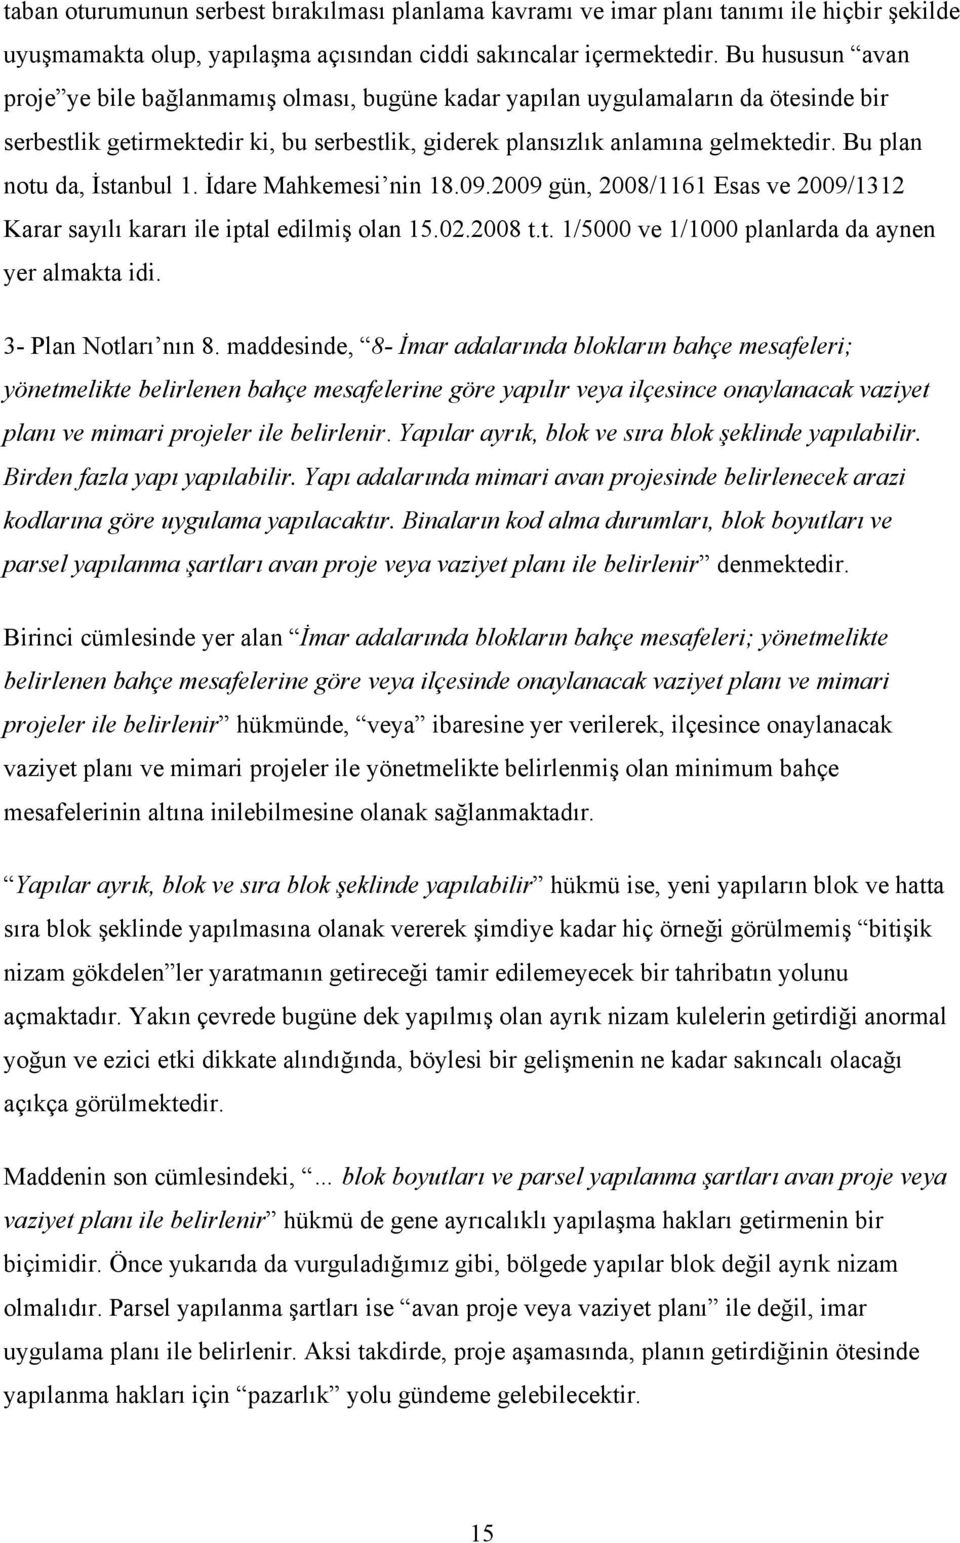 Bu plan notu da, İstanbul 1. İdare Mahkemesi nin 18.09.2009 gün, 2008/1161 Esas ve 2009/1312 Karar sayılı kararı ile iptal edilmiş olan 15.02.2008 t.t. 1/5000 ve 1/1000 planlarda da aynen yer almakta idi.